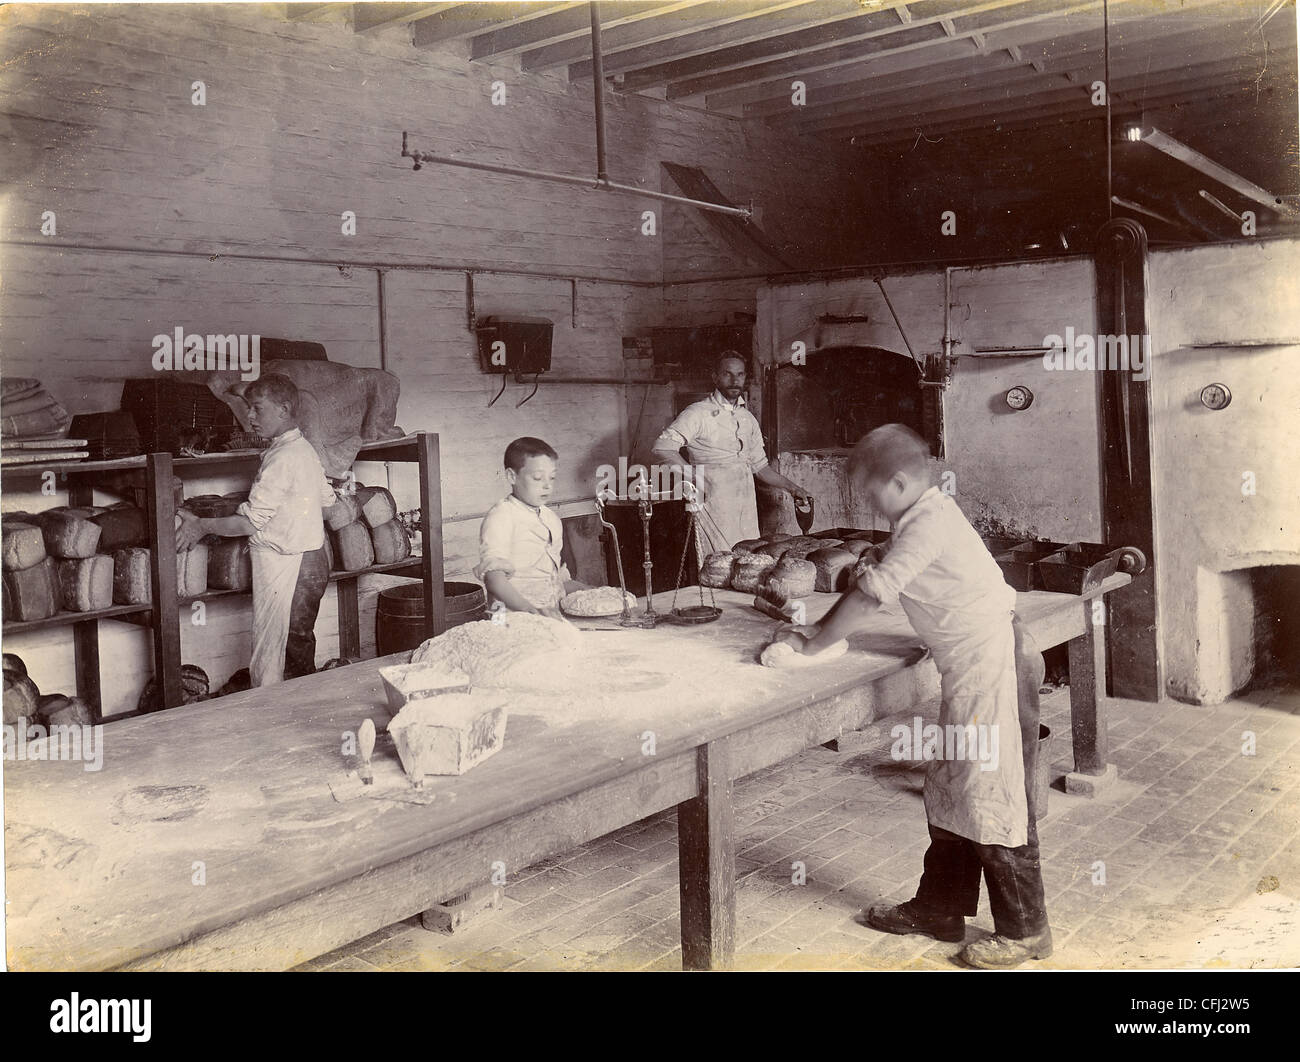 Bäckerei, Haus Häuser, Amos Lane, Birmingham, c 1900. Auszubildender Bäcker, den Teig und Backen im Waisenhaus Brot Stockfoto